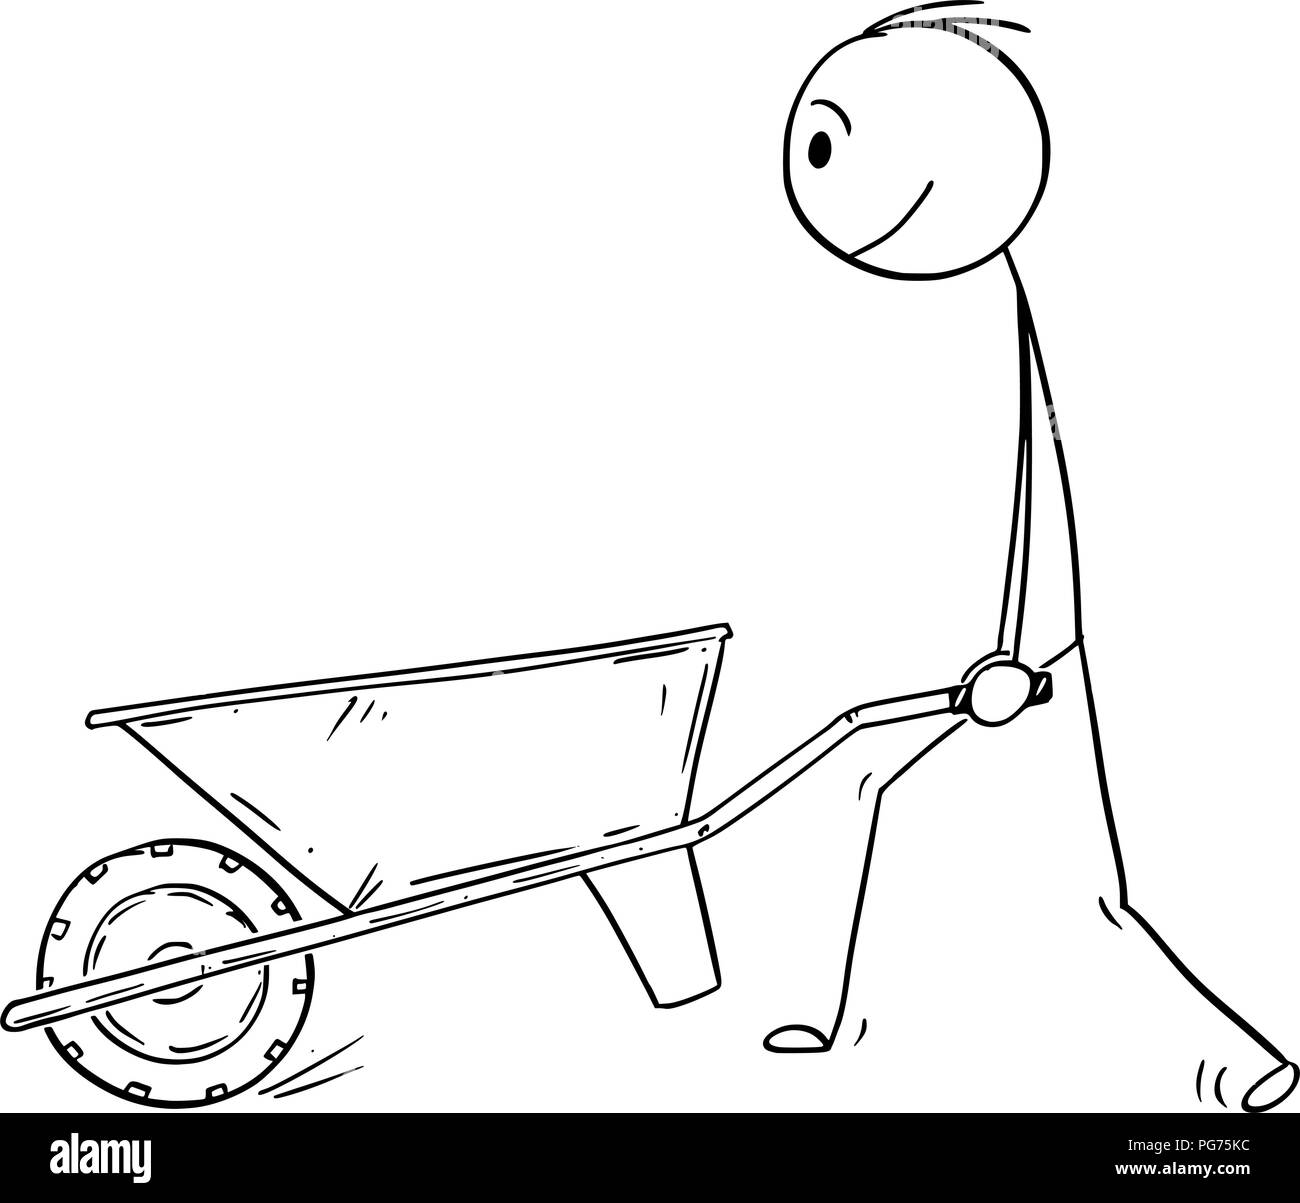 Cartoon of Man Pushing Empty Wheelbarrow Stock Vector